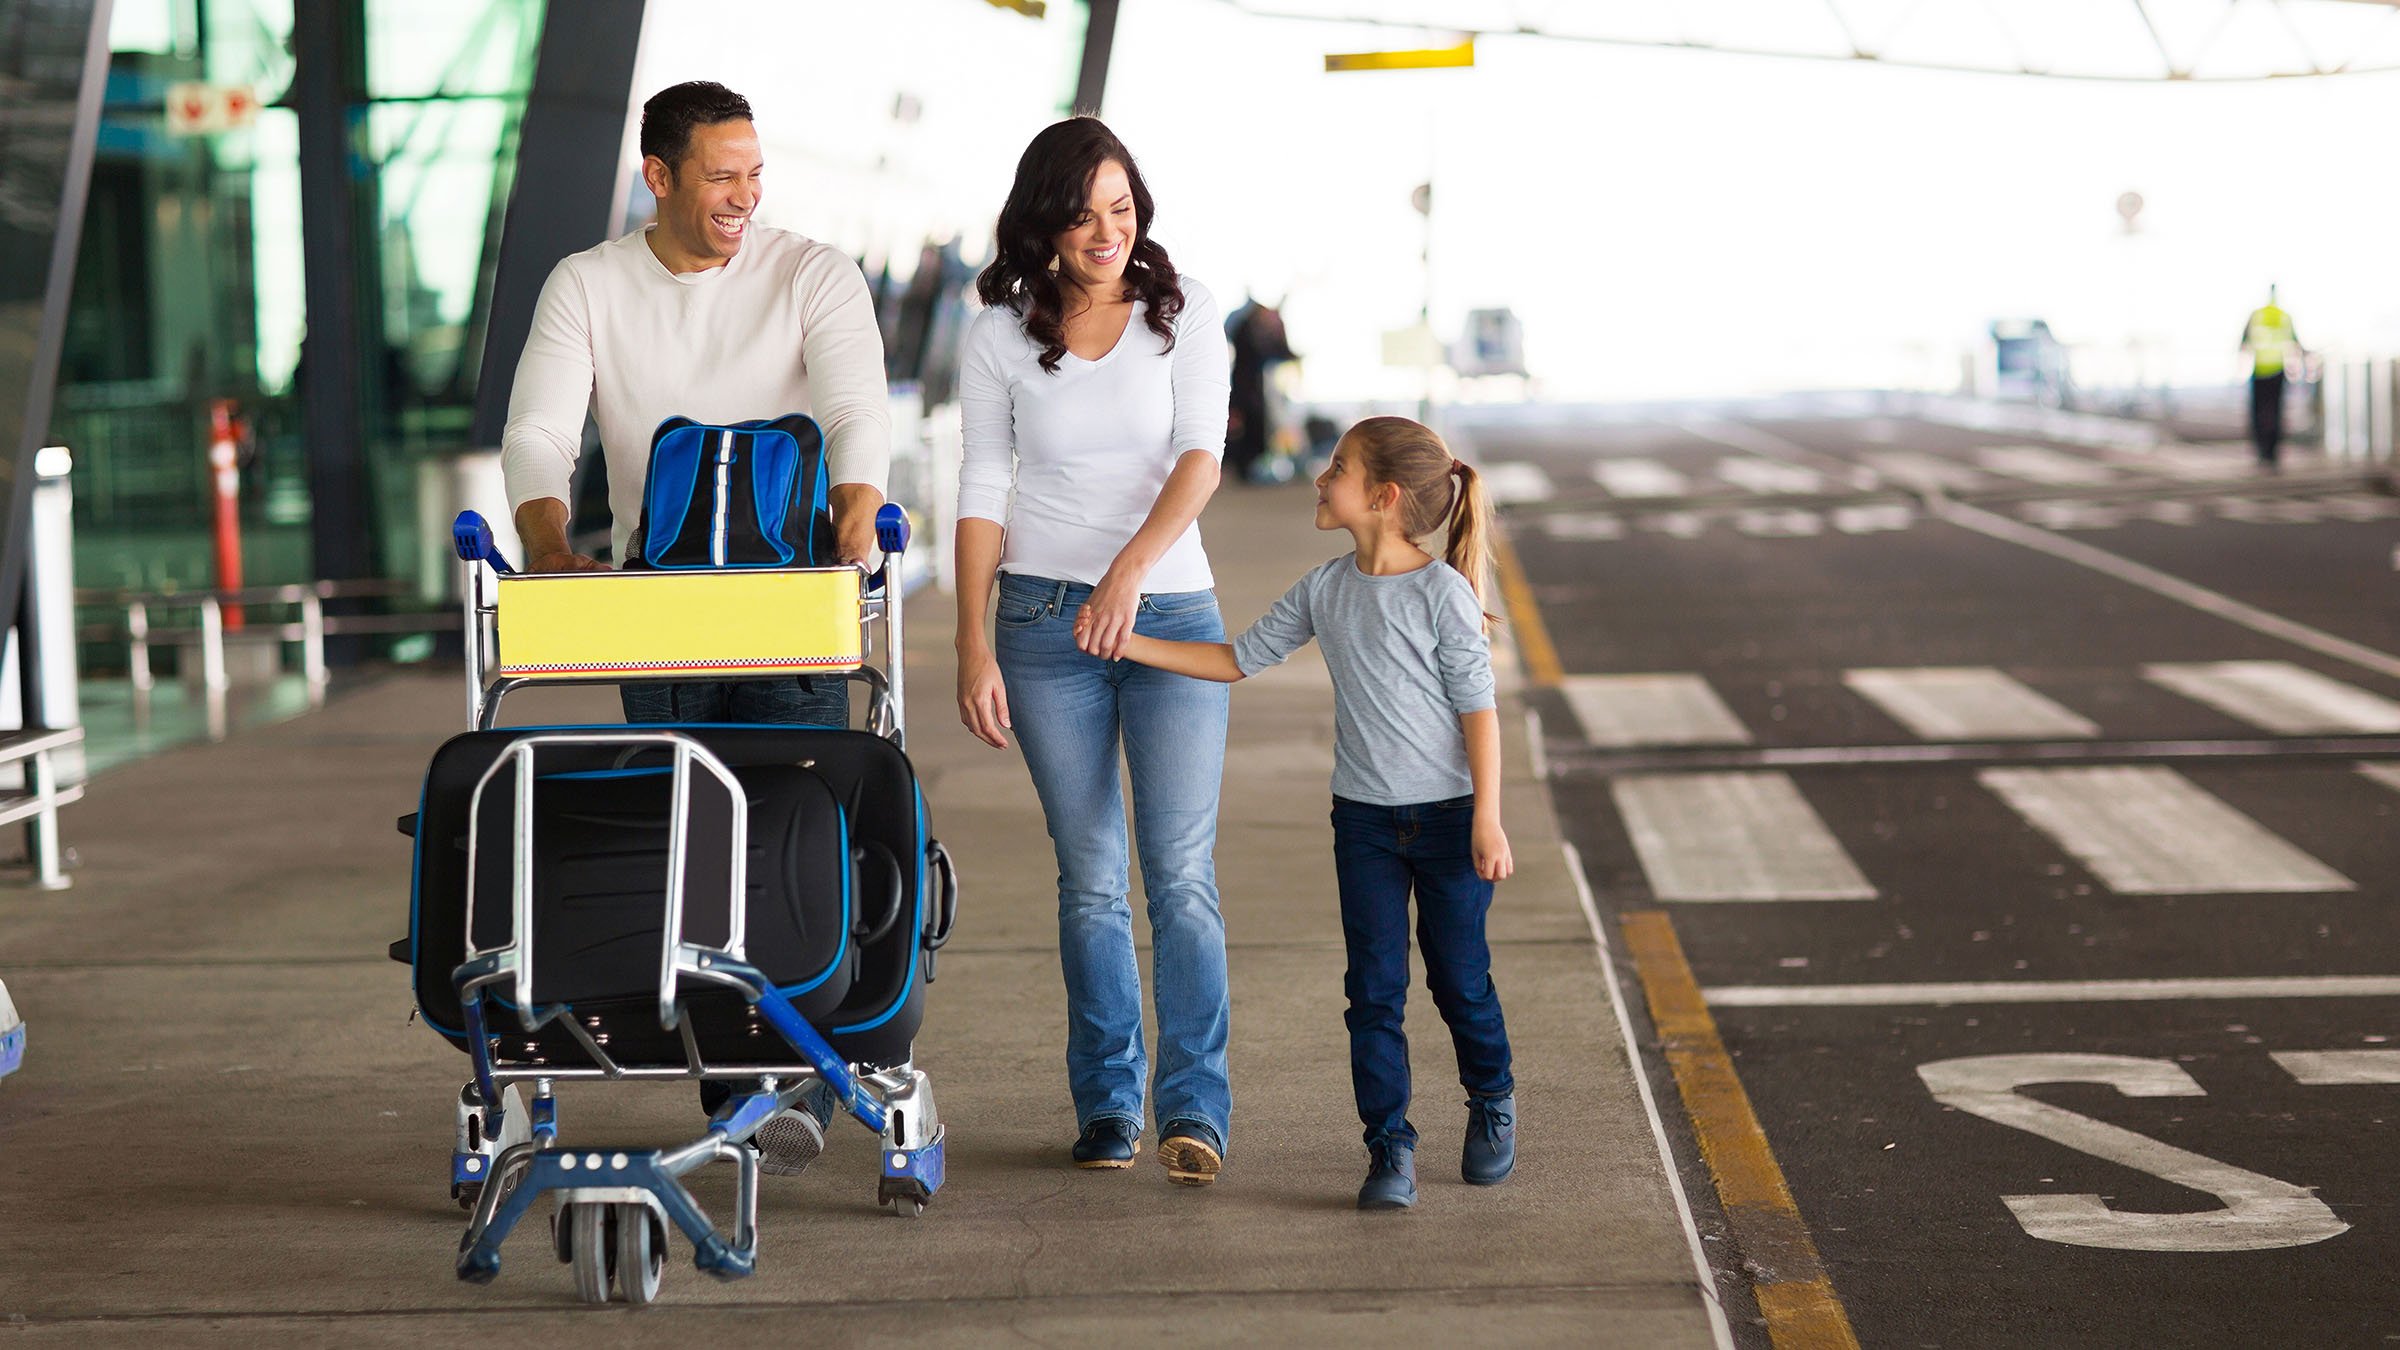 Leo un libro Accesorios lucha El precio de la facturación de maletas con Delta Air Lines